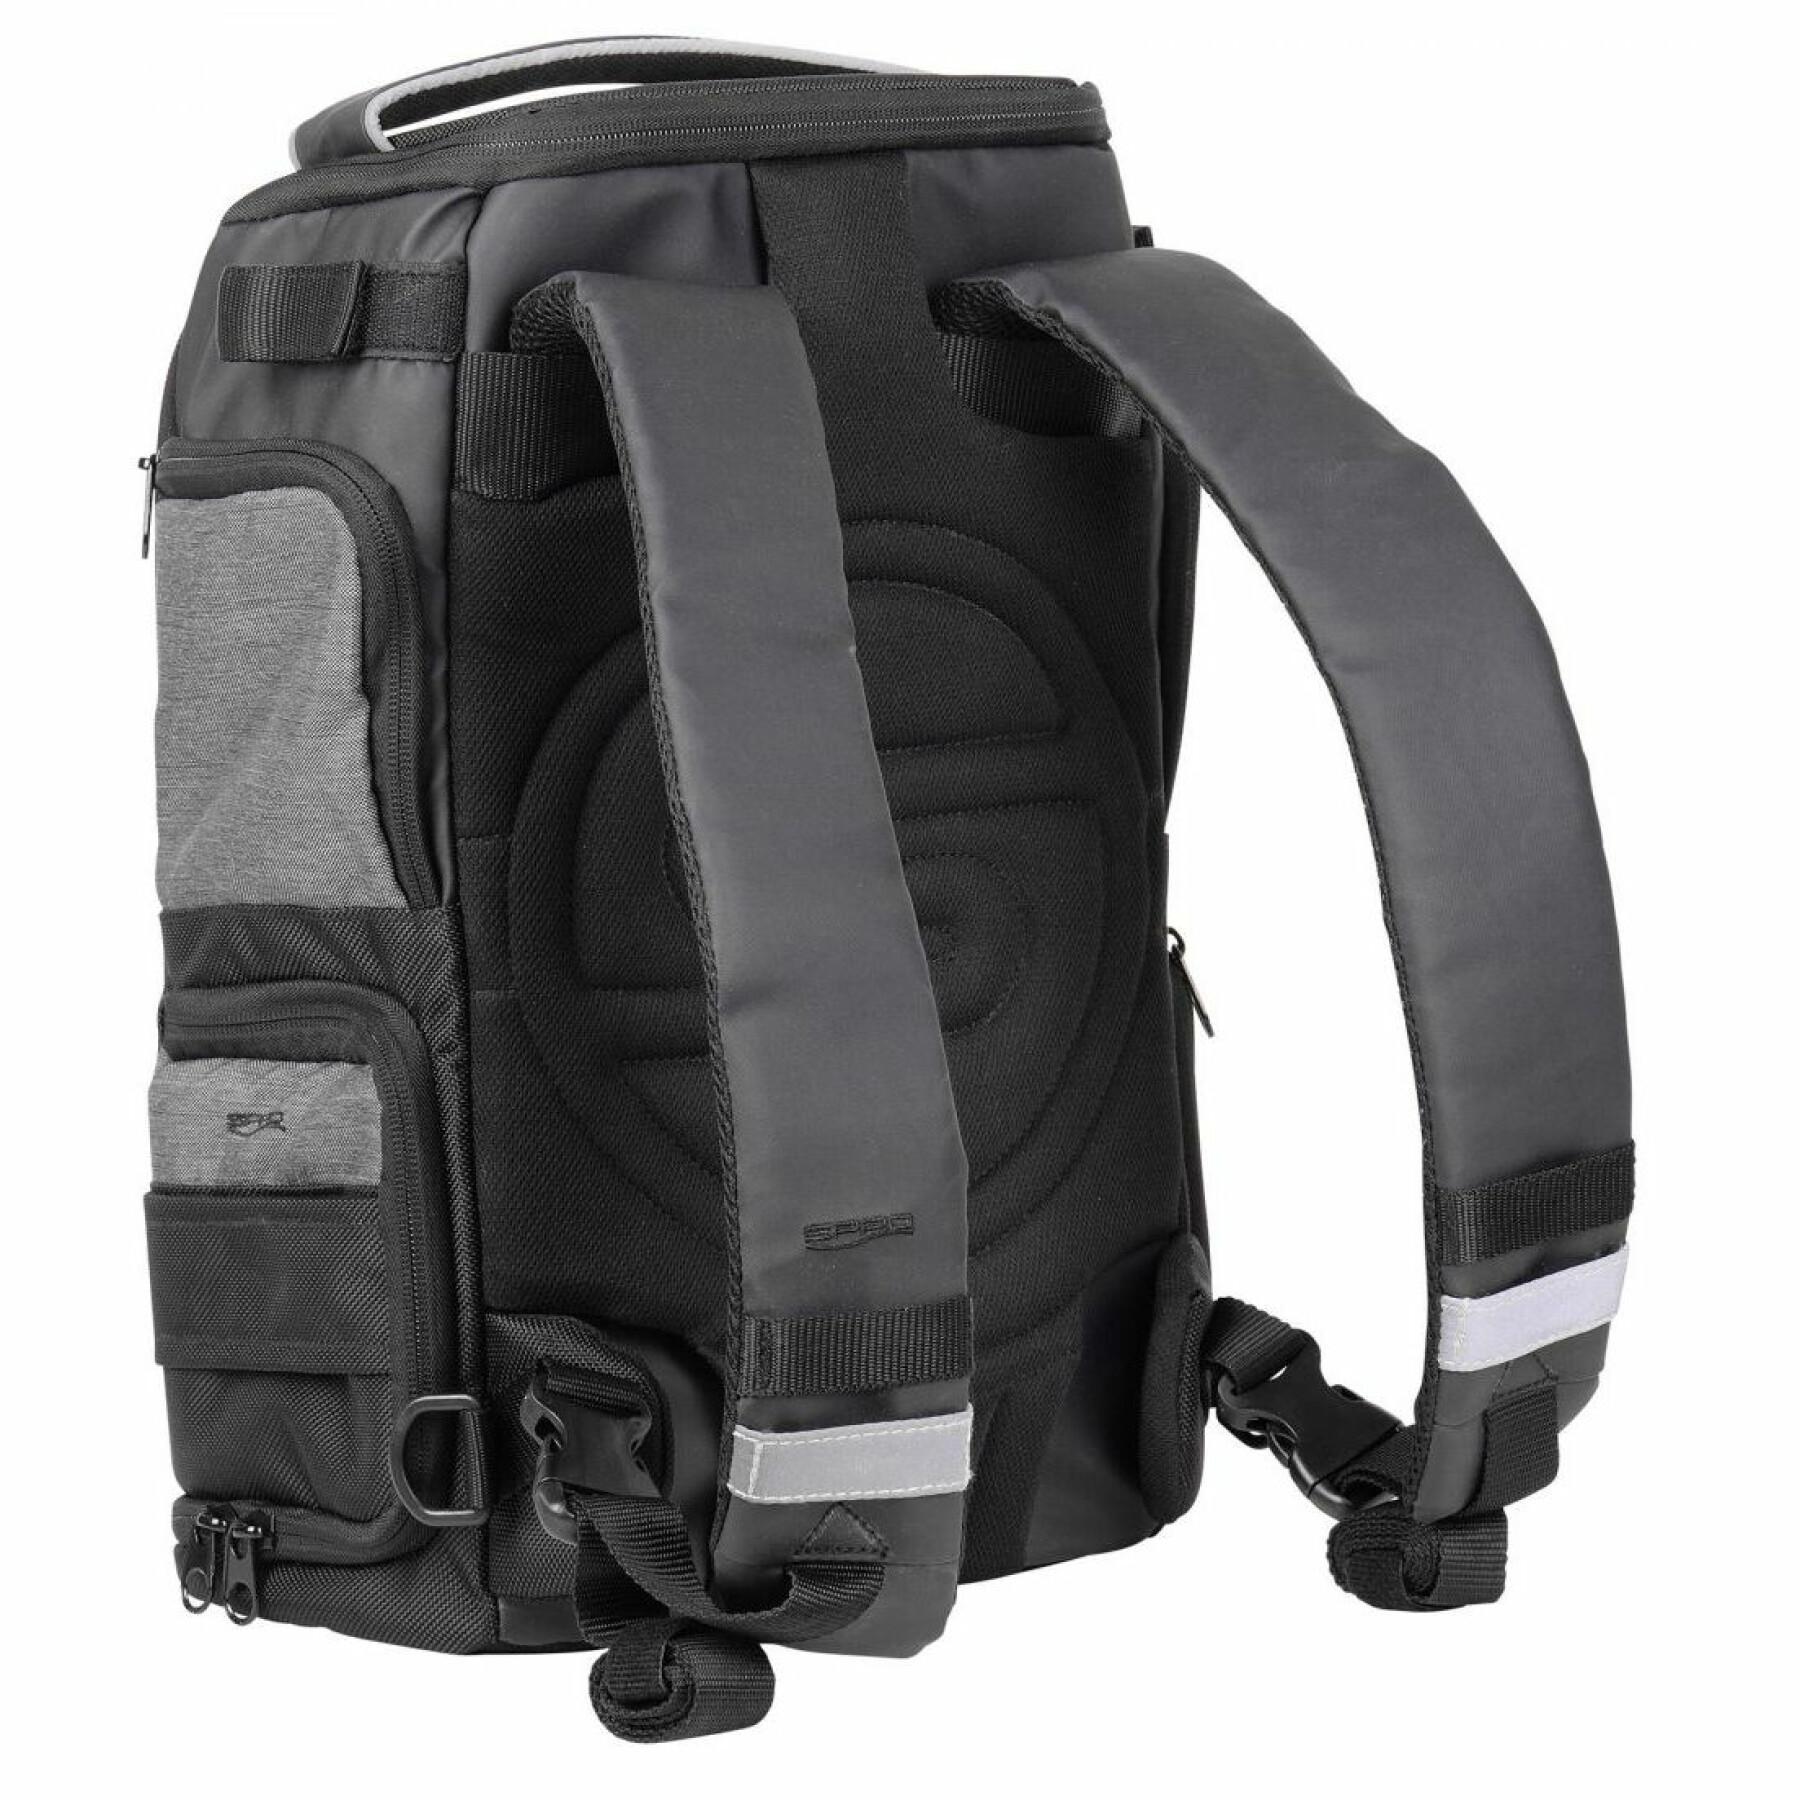 Backpack Spro 25 v2